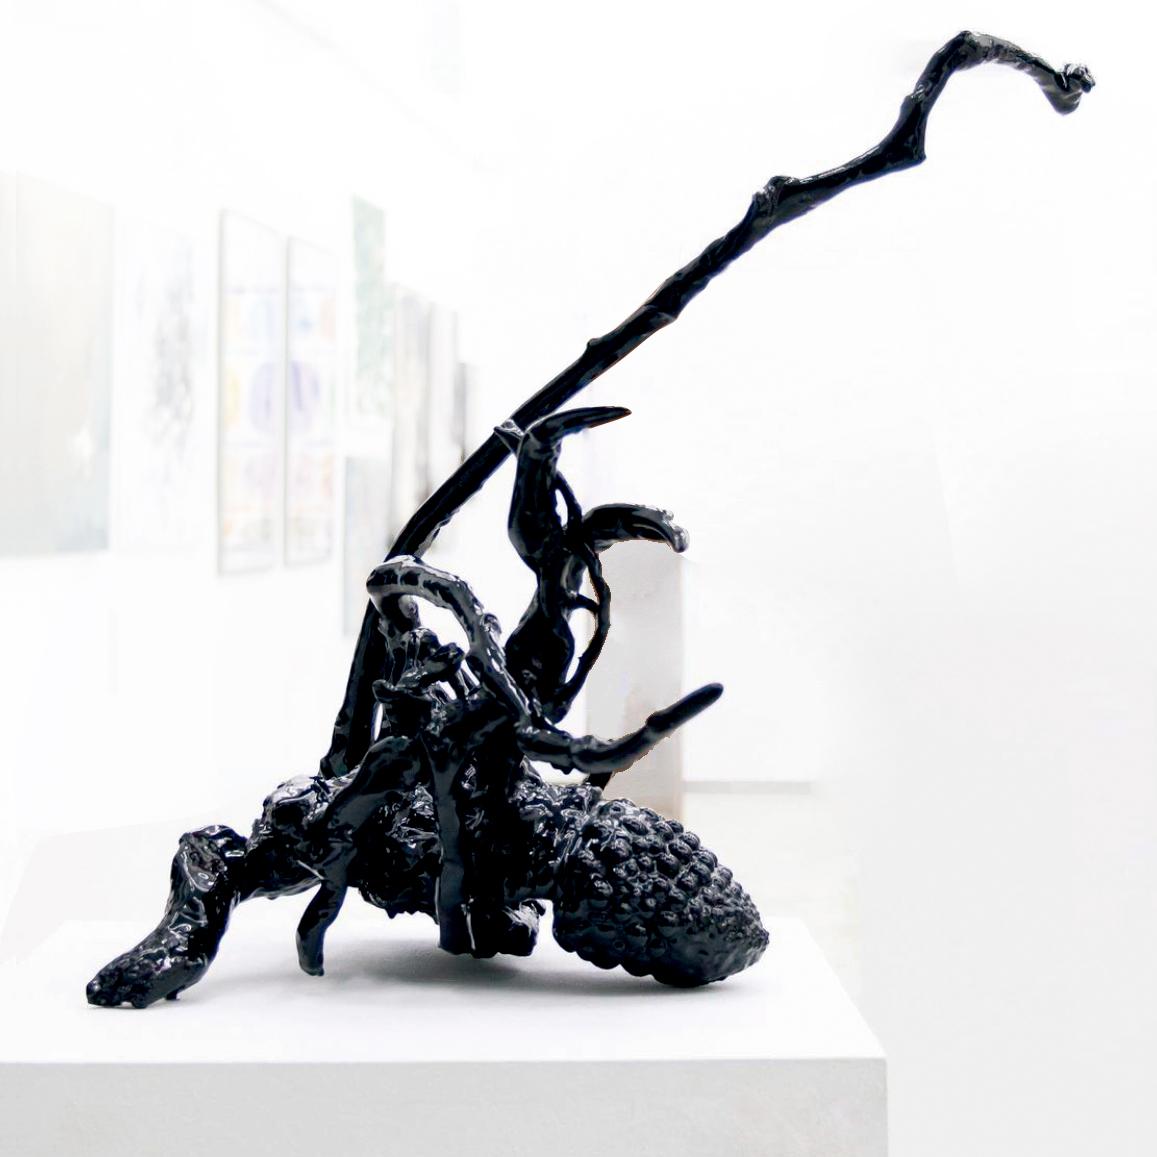 Escorpión by Javier Rivas - Sculpture by Unknown